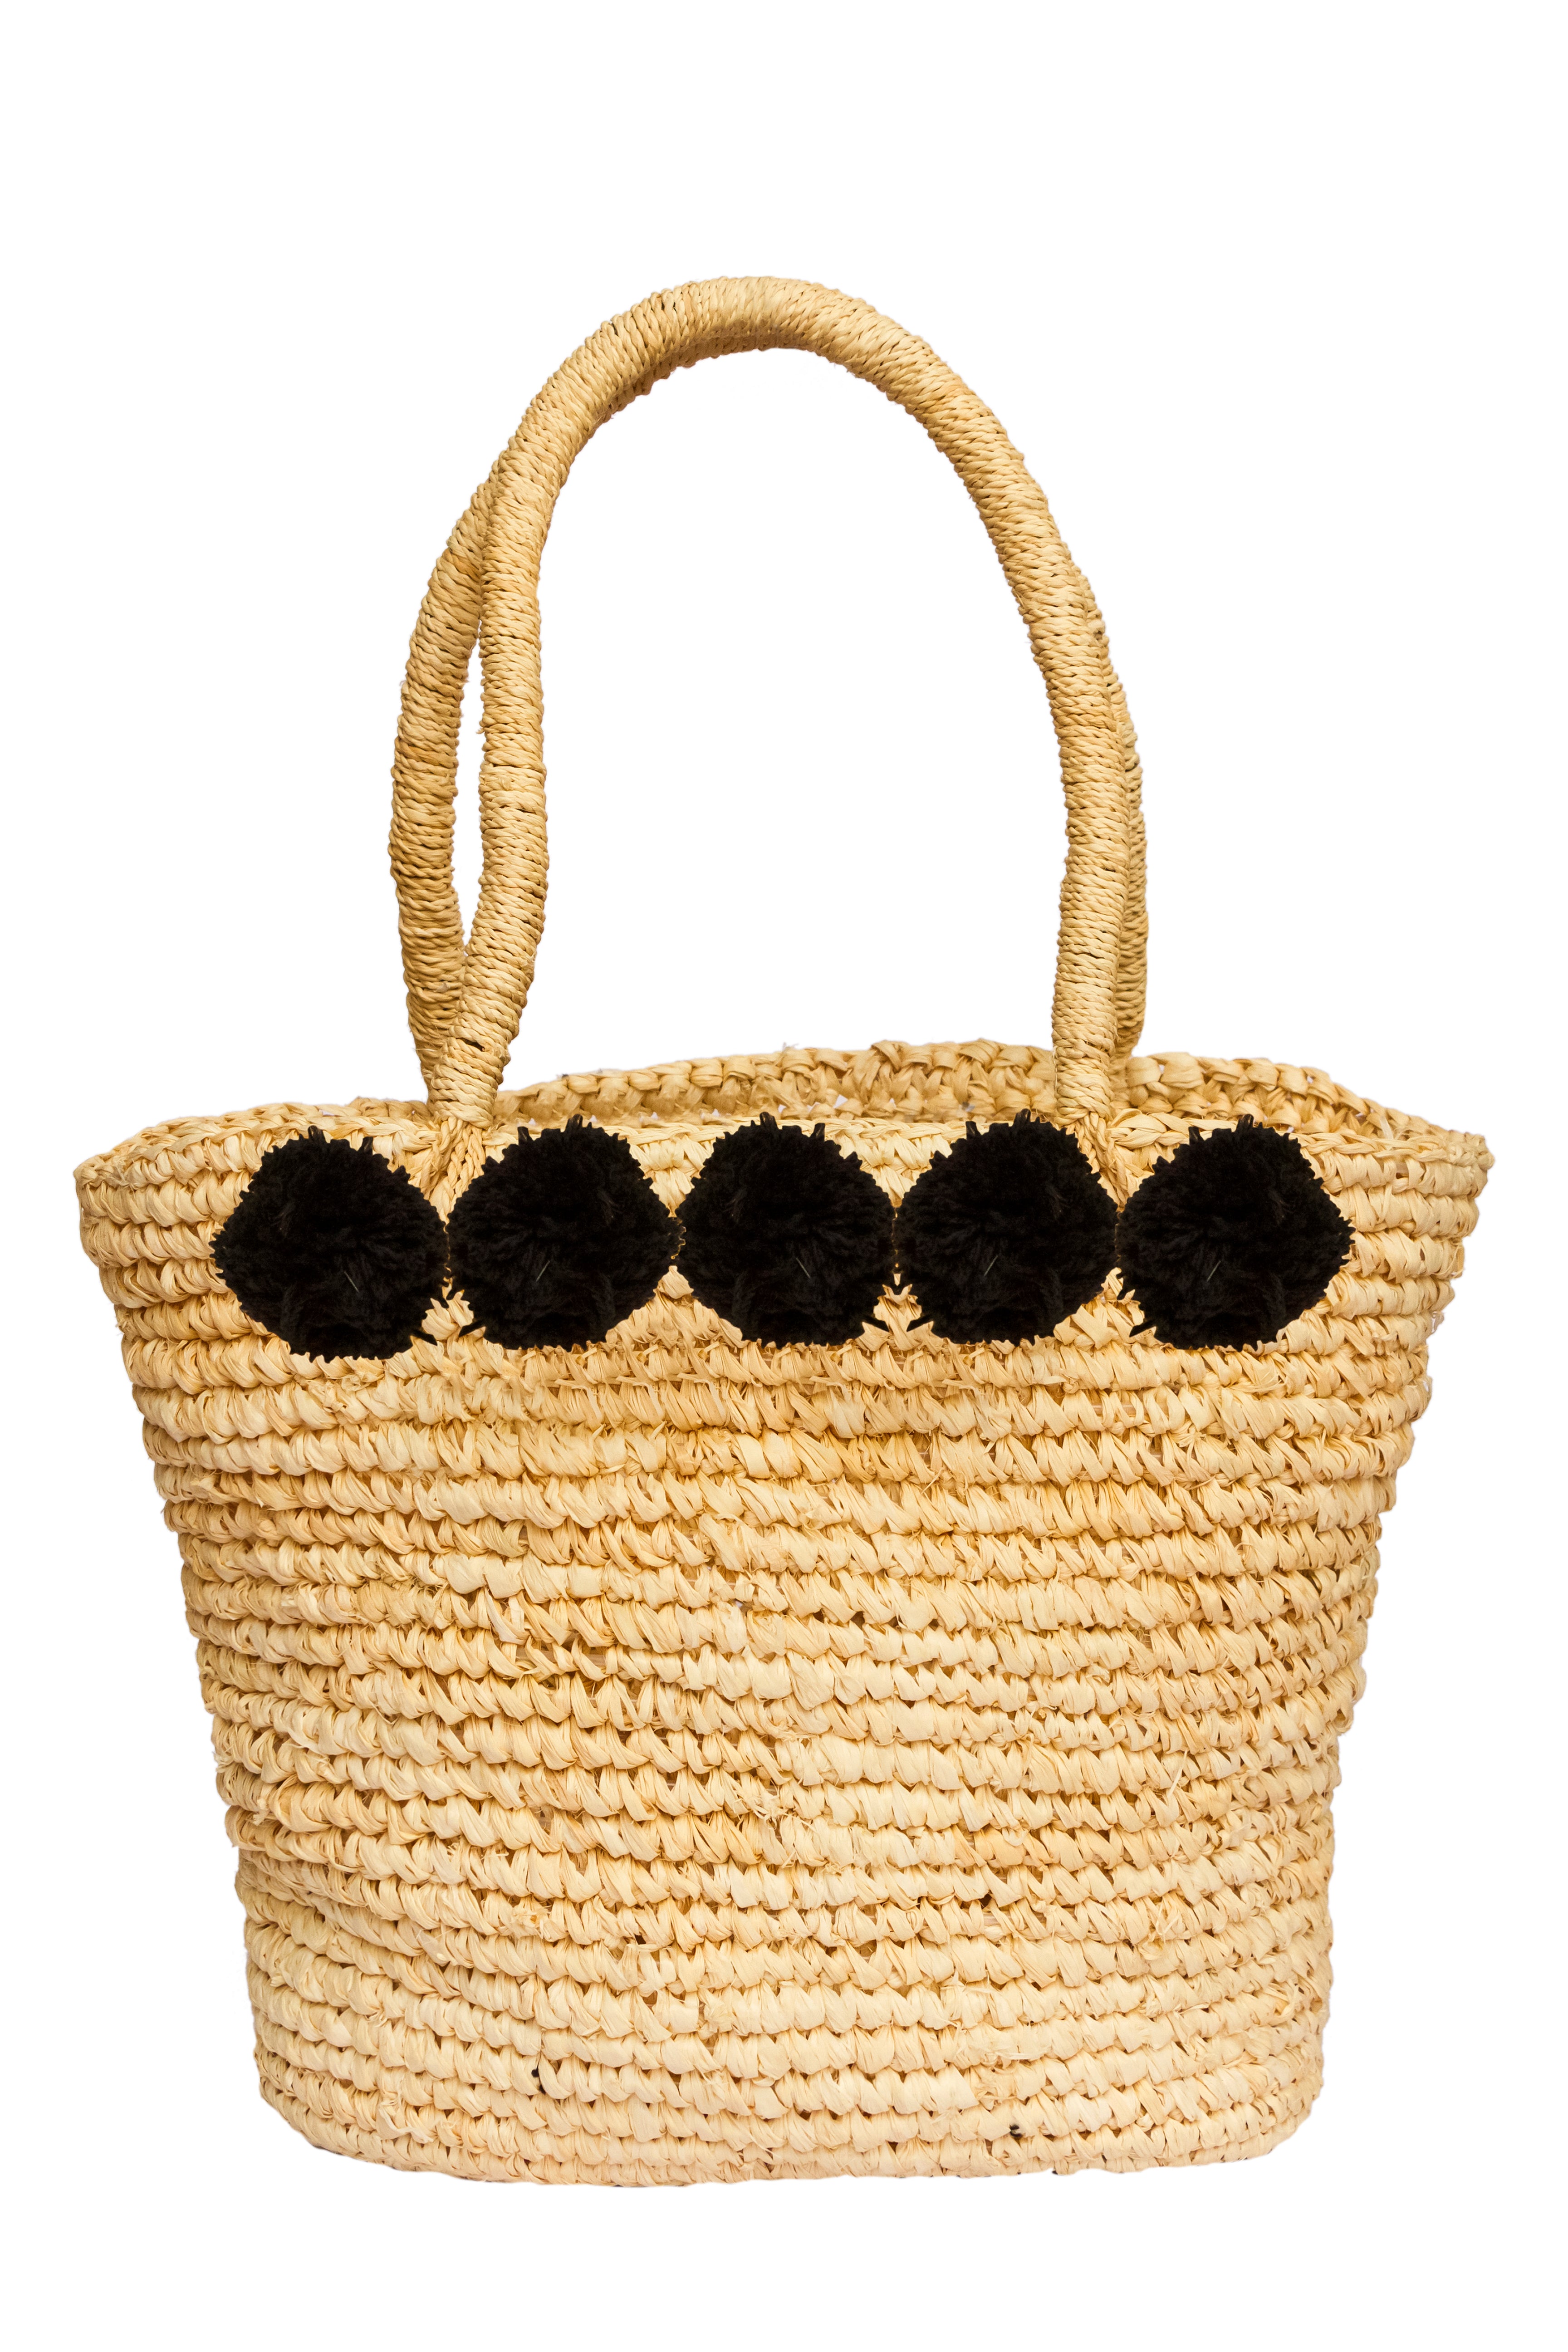 summer beach bag; straw summer bag; beach tote bag; straw tote bag; pompom tote bag